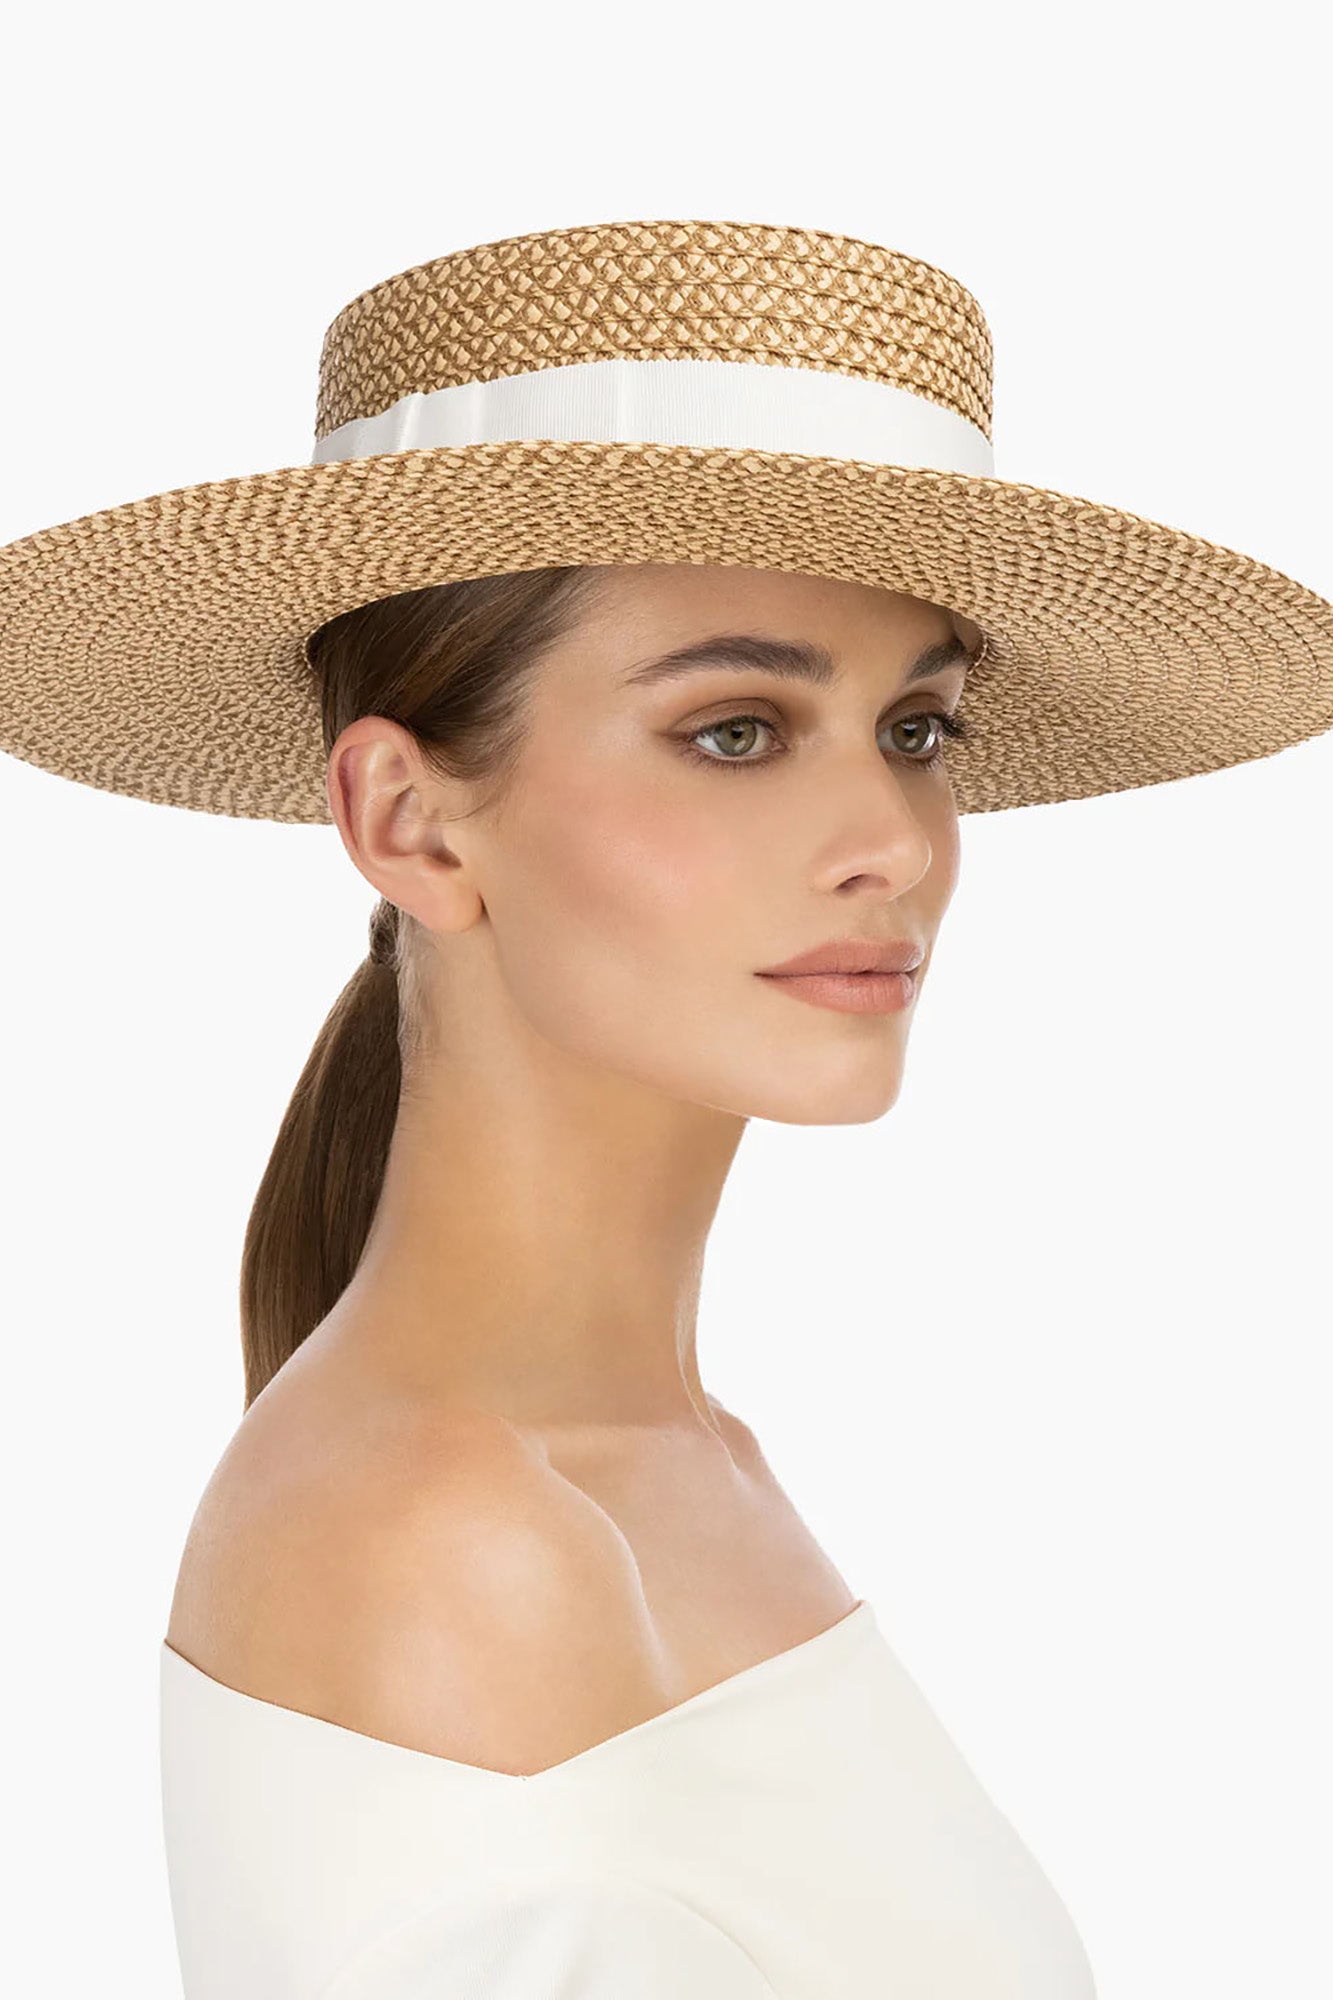 Gondolier Boater Hat